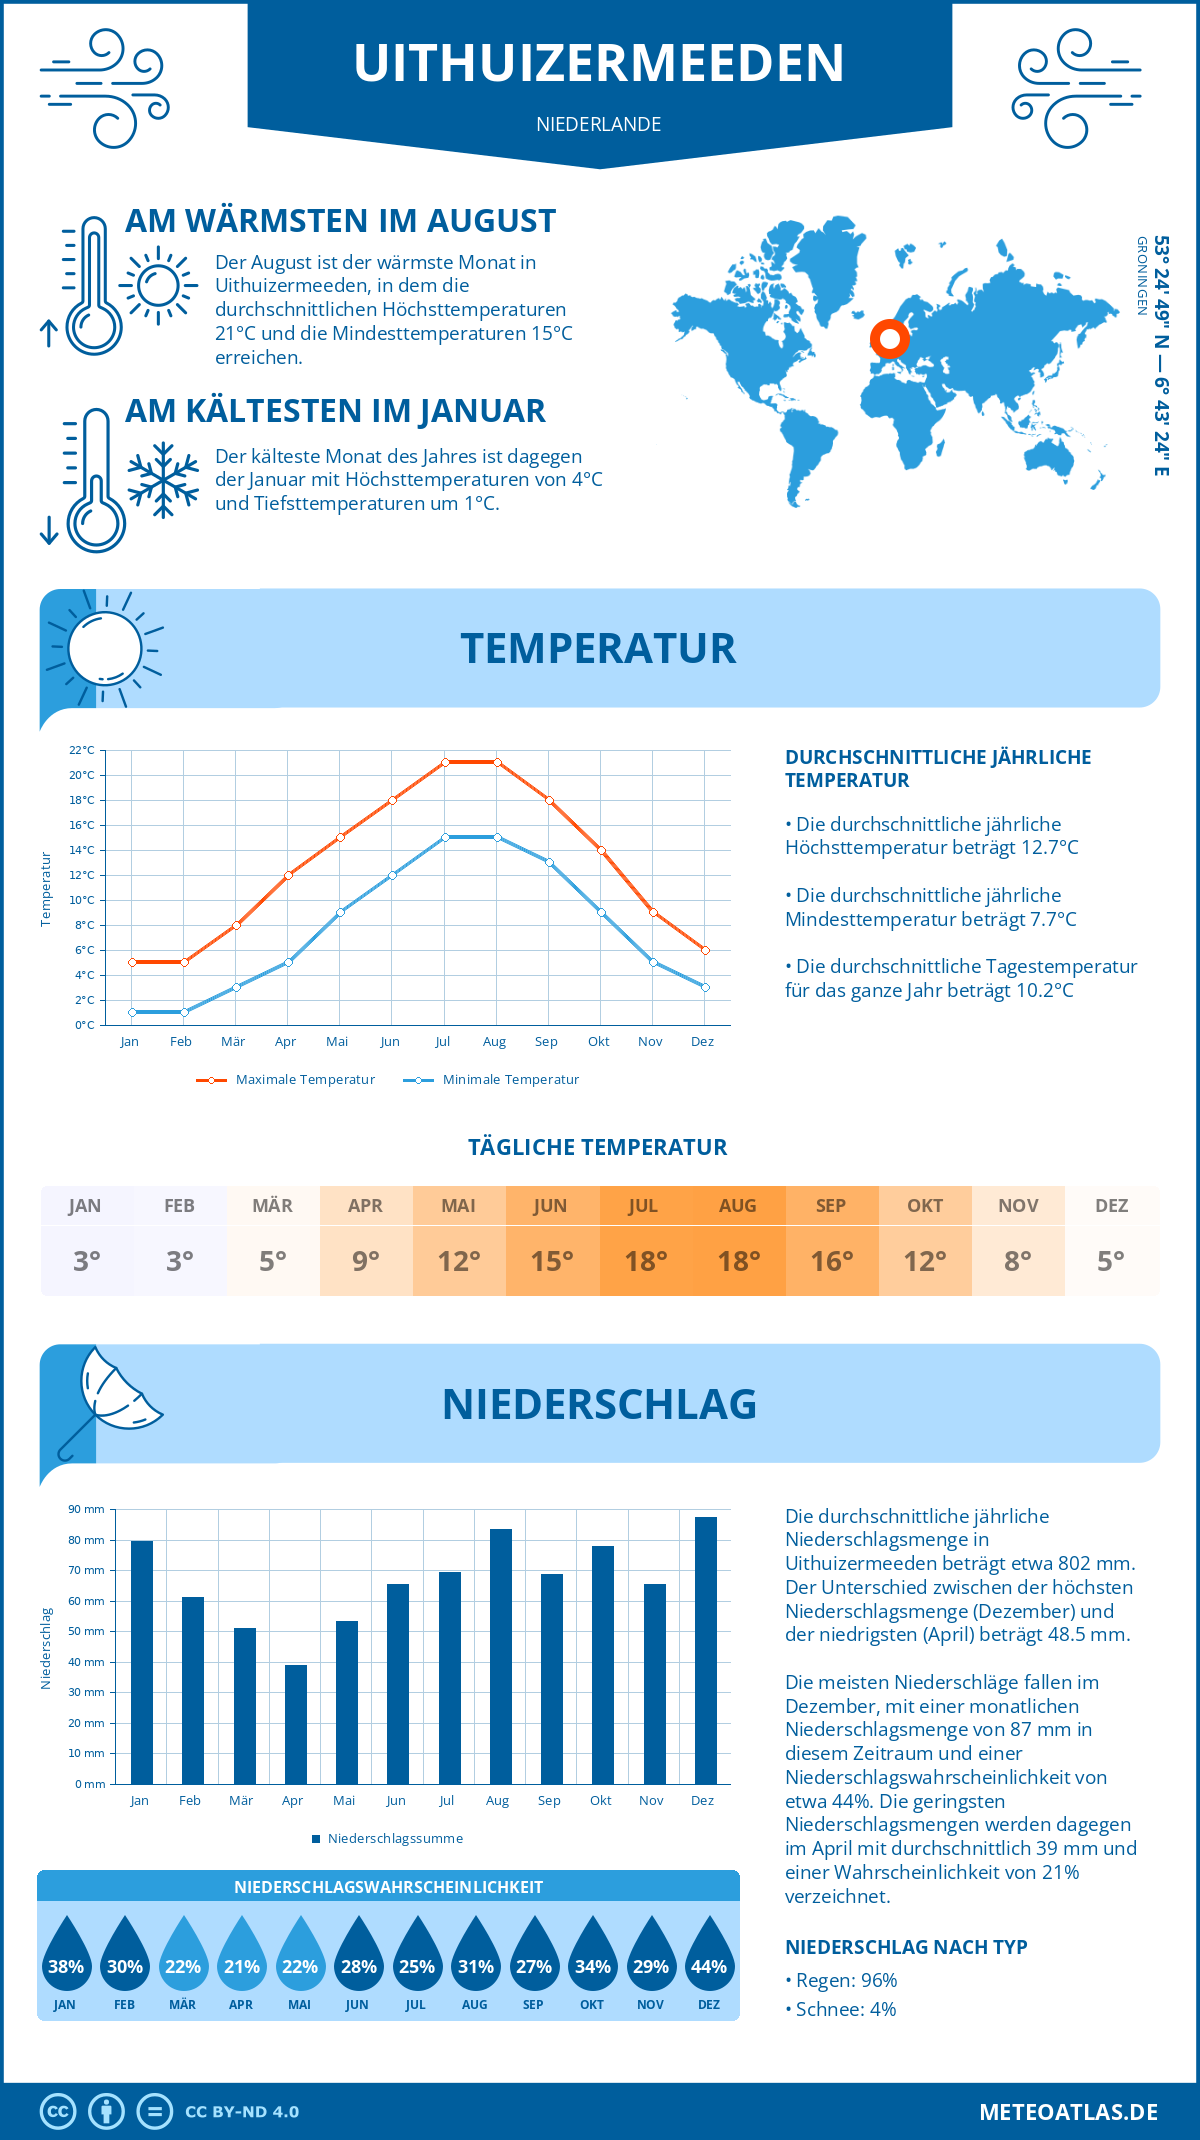 Wetter Uithuizermeeden (Niederlande) - Temperatur und Niederschlag